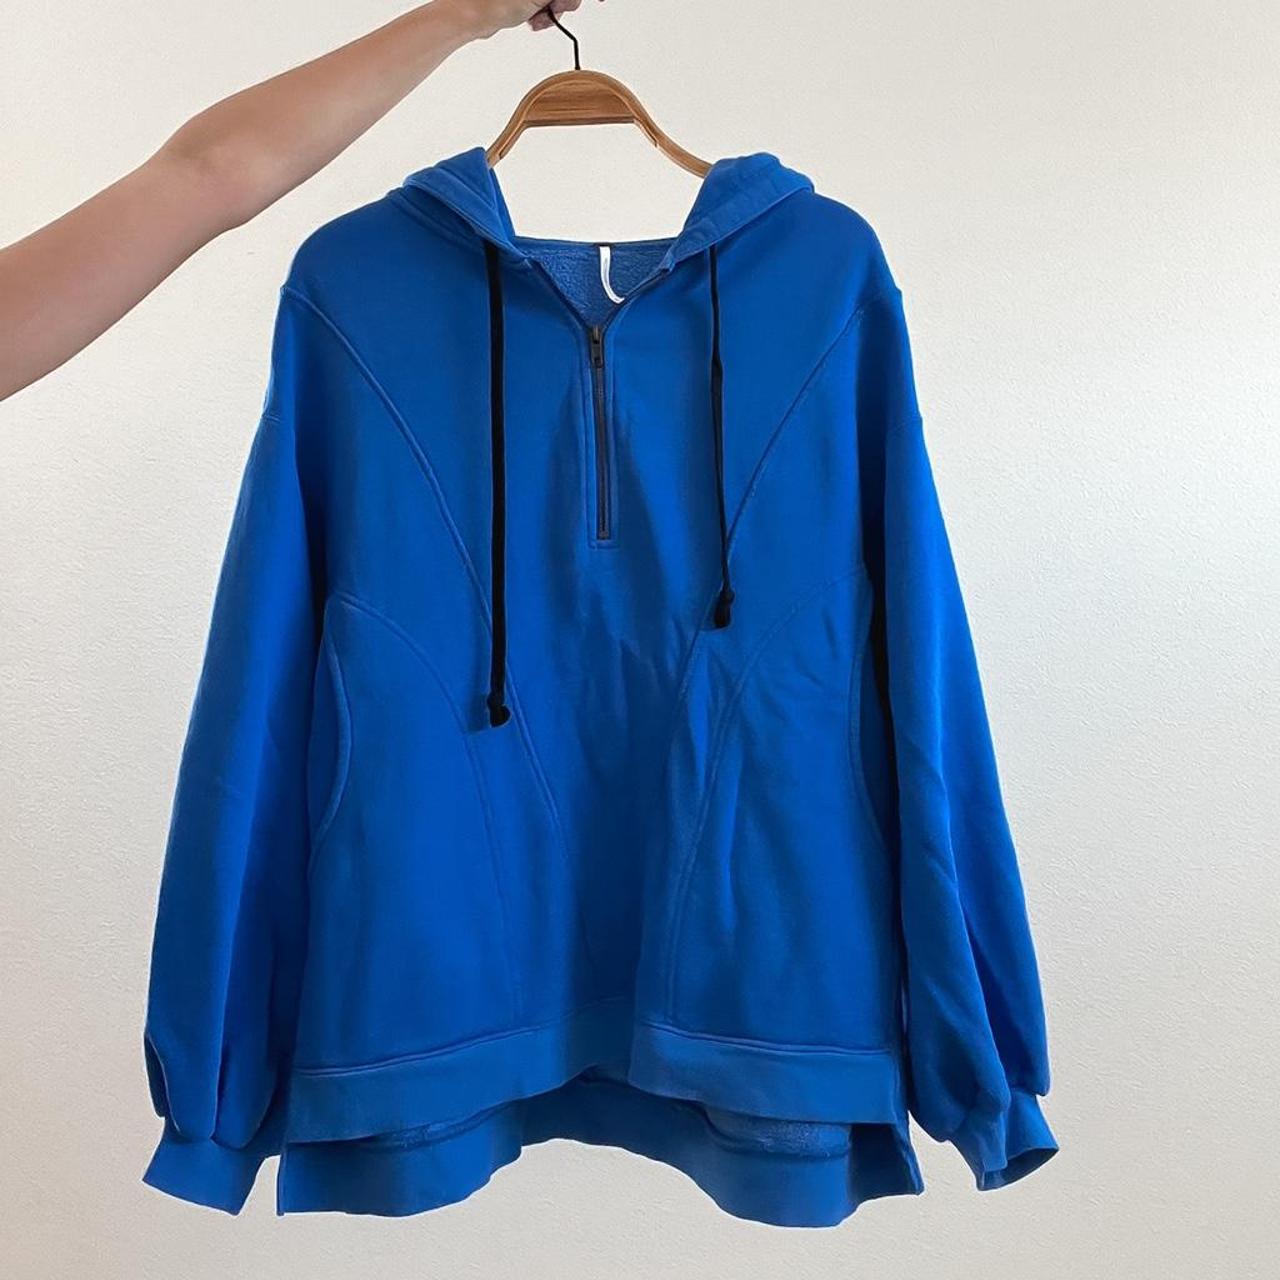 Cobalt blue free people zip hoodie. Thick material.... - Depop